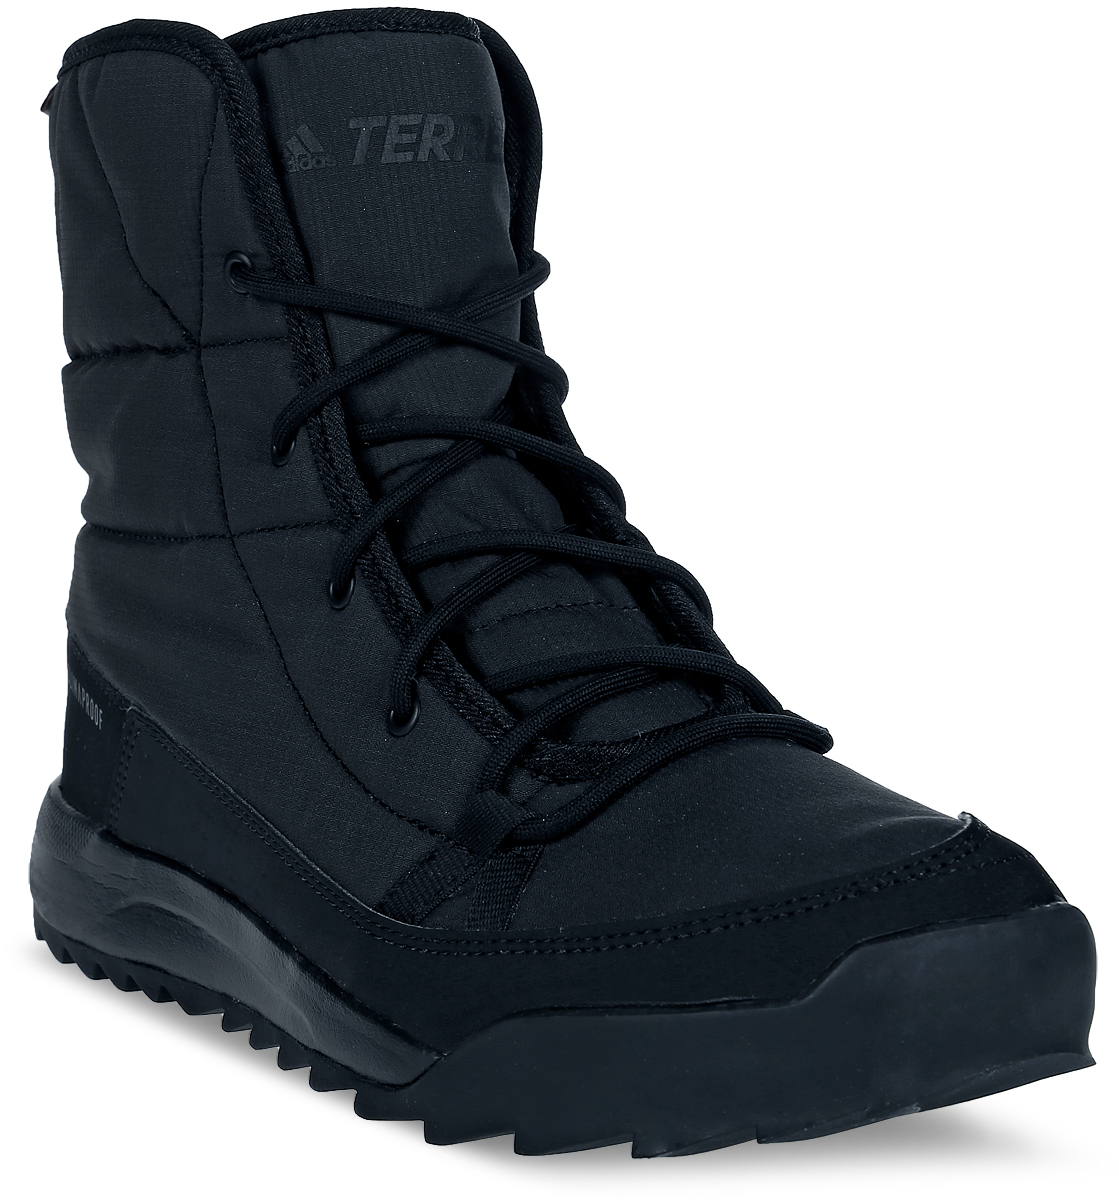 Ботинки женские Adidas Terrex Choleah Padd, цвет: черный. S80748. Размер 7 (39)